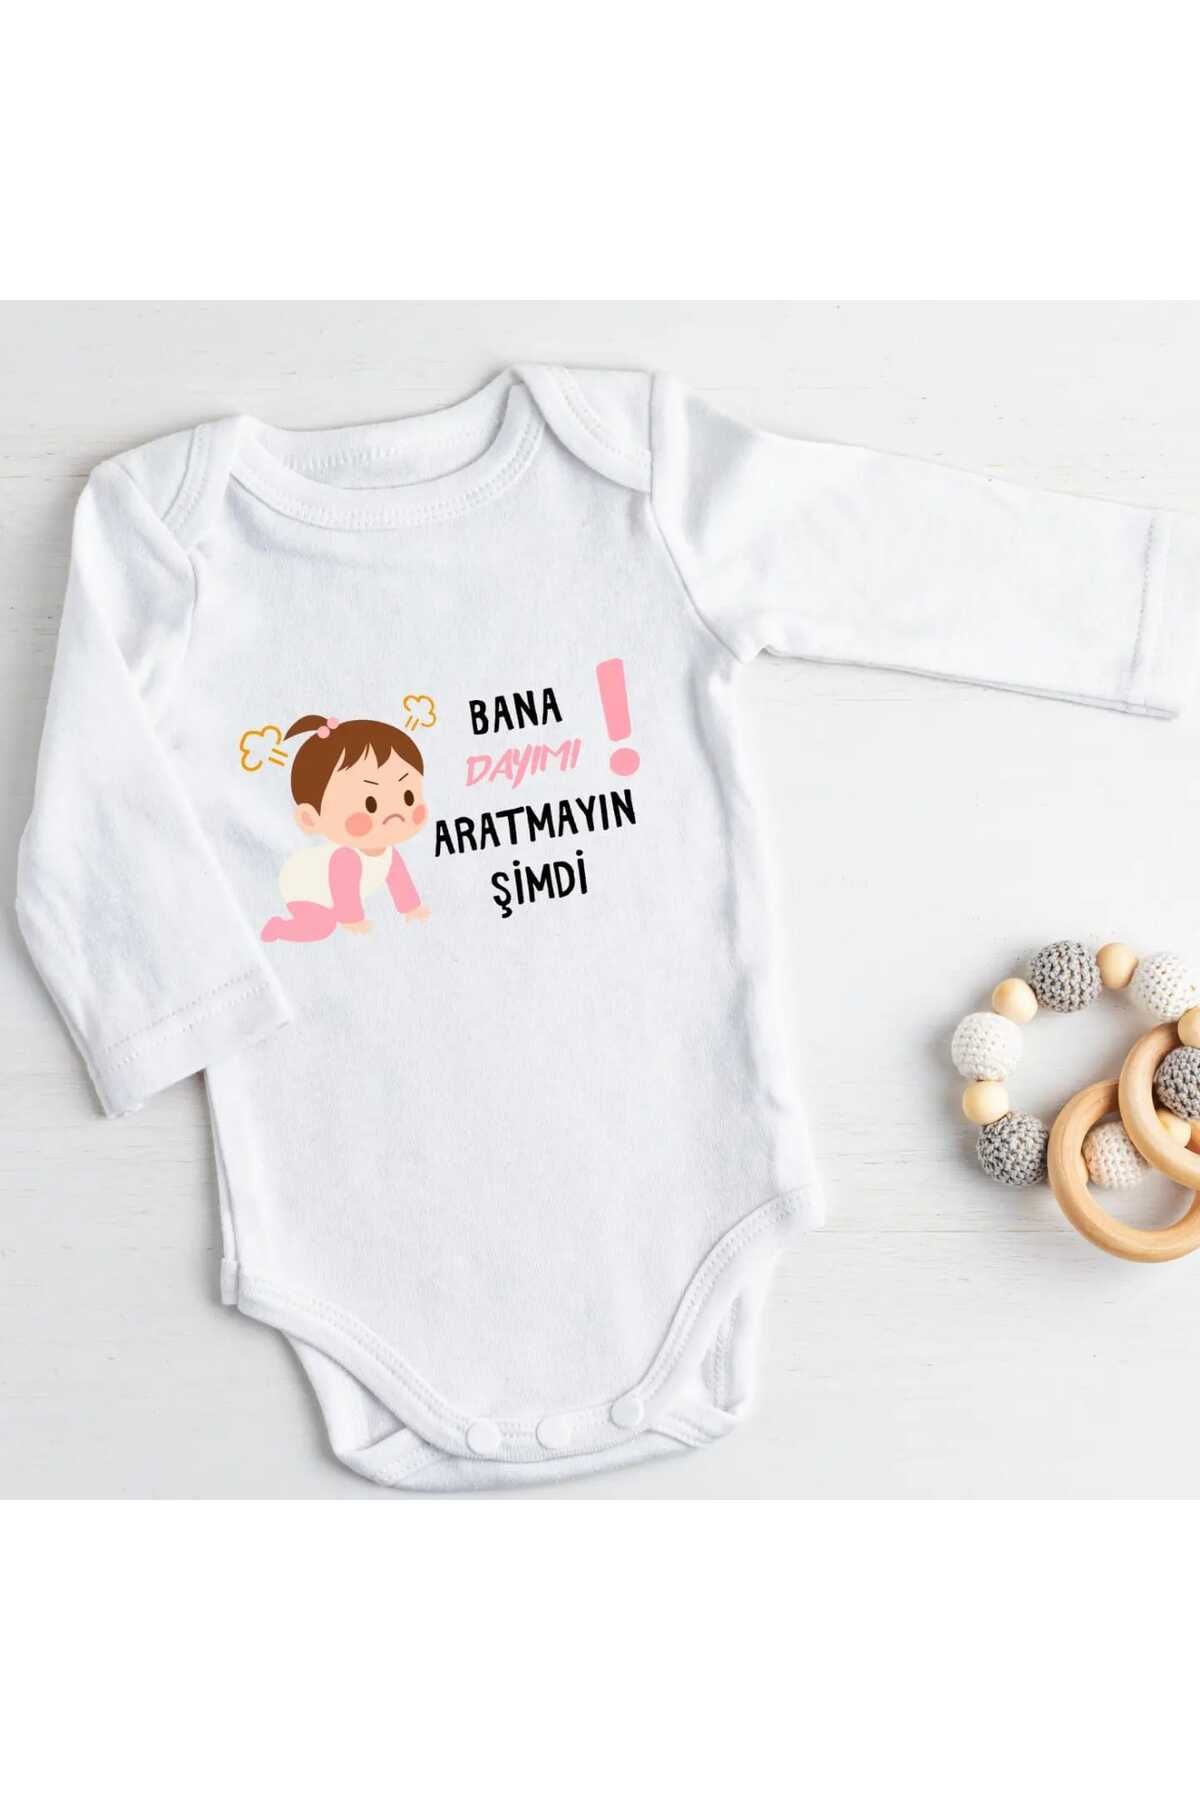 Kazuma Design Bana Dayımı Aratmayın Şimdi Yazılı Özel Tasarım Baskılı Zıbın Badi Bebek Giyim %100 Pamuk